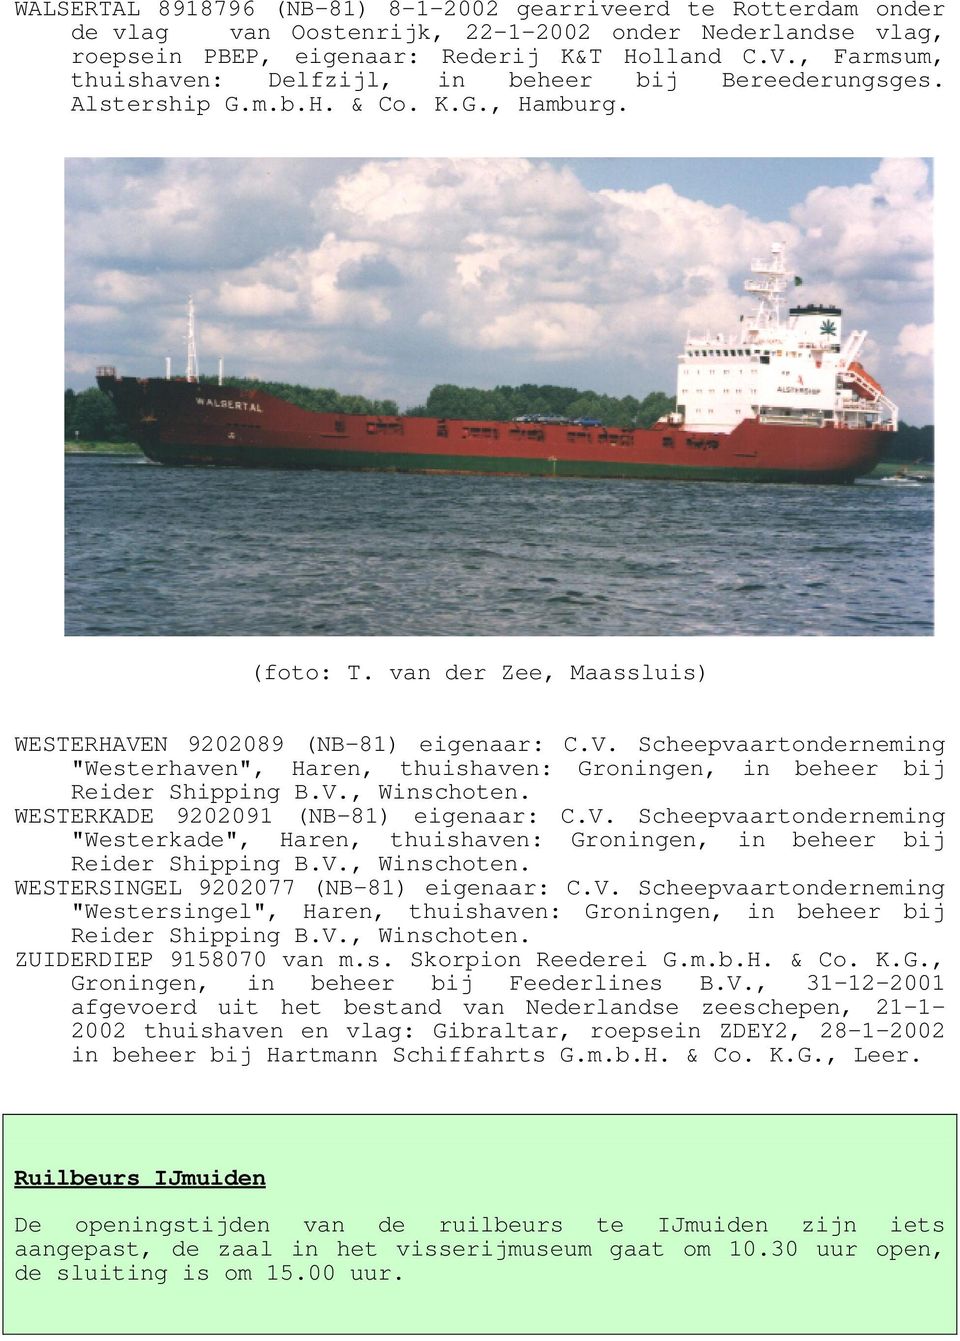 N 9202089 (NB-81) eigenaar: C.V. Scheepvaartonderneming "Westerhaven", Haren, thuishaven: Groningen, in beheer bij Reider Shipping B.V., Winschoten. WESTERKADE 9202091 (NB-81) eigenaar: C.V. Scheepvaartonderneming "Westerkade", Haren, thuishaven: Groningen, in beheer bij Reider Shipping B.